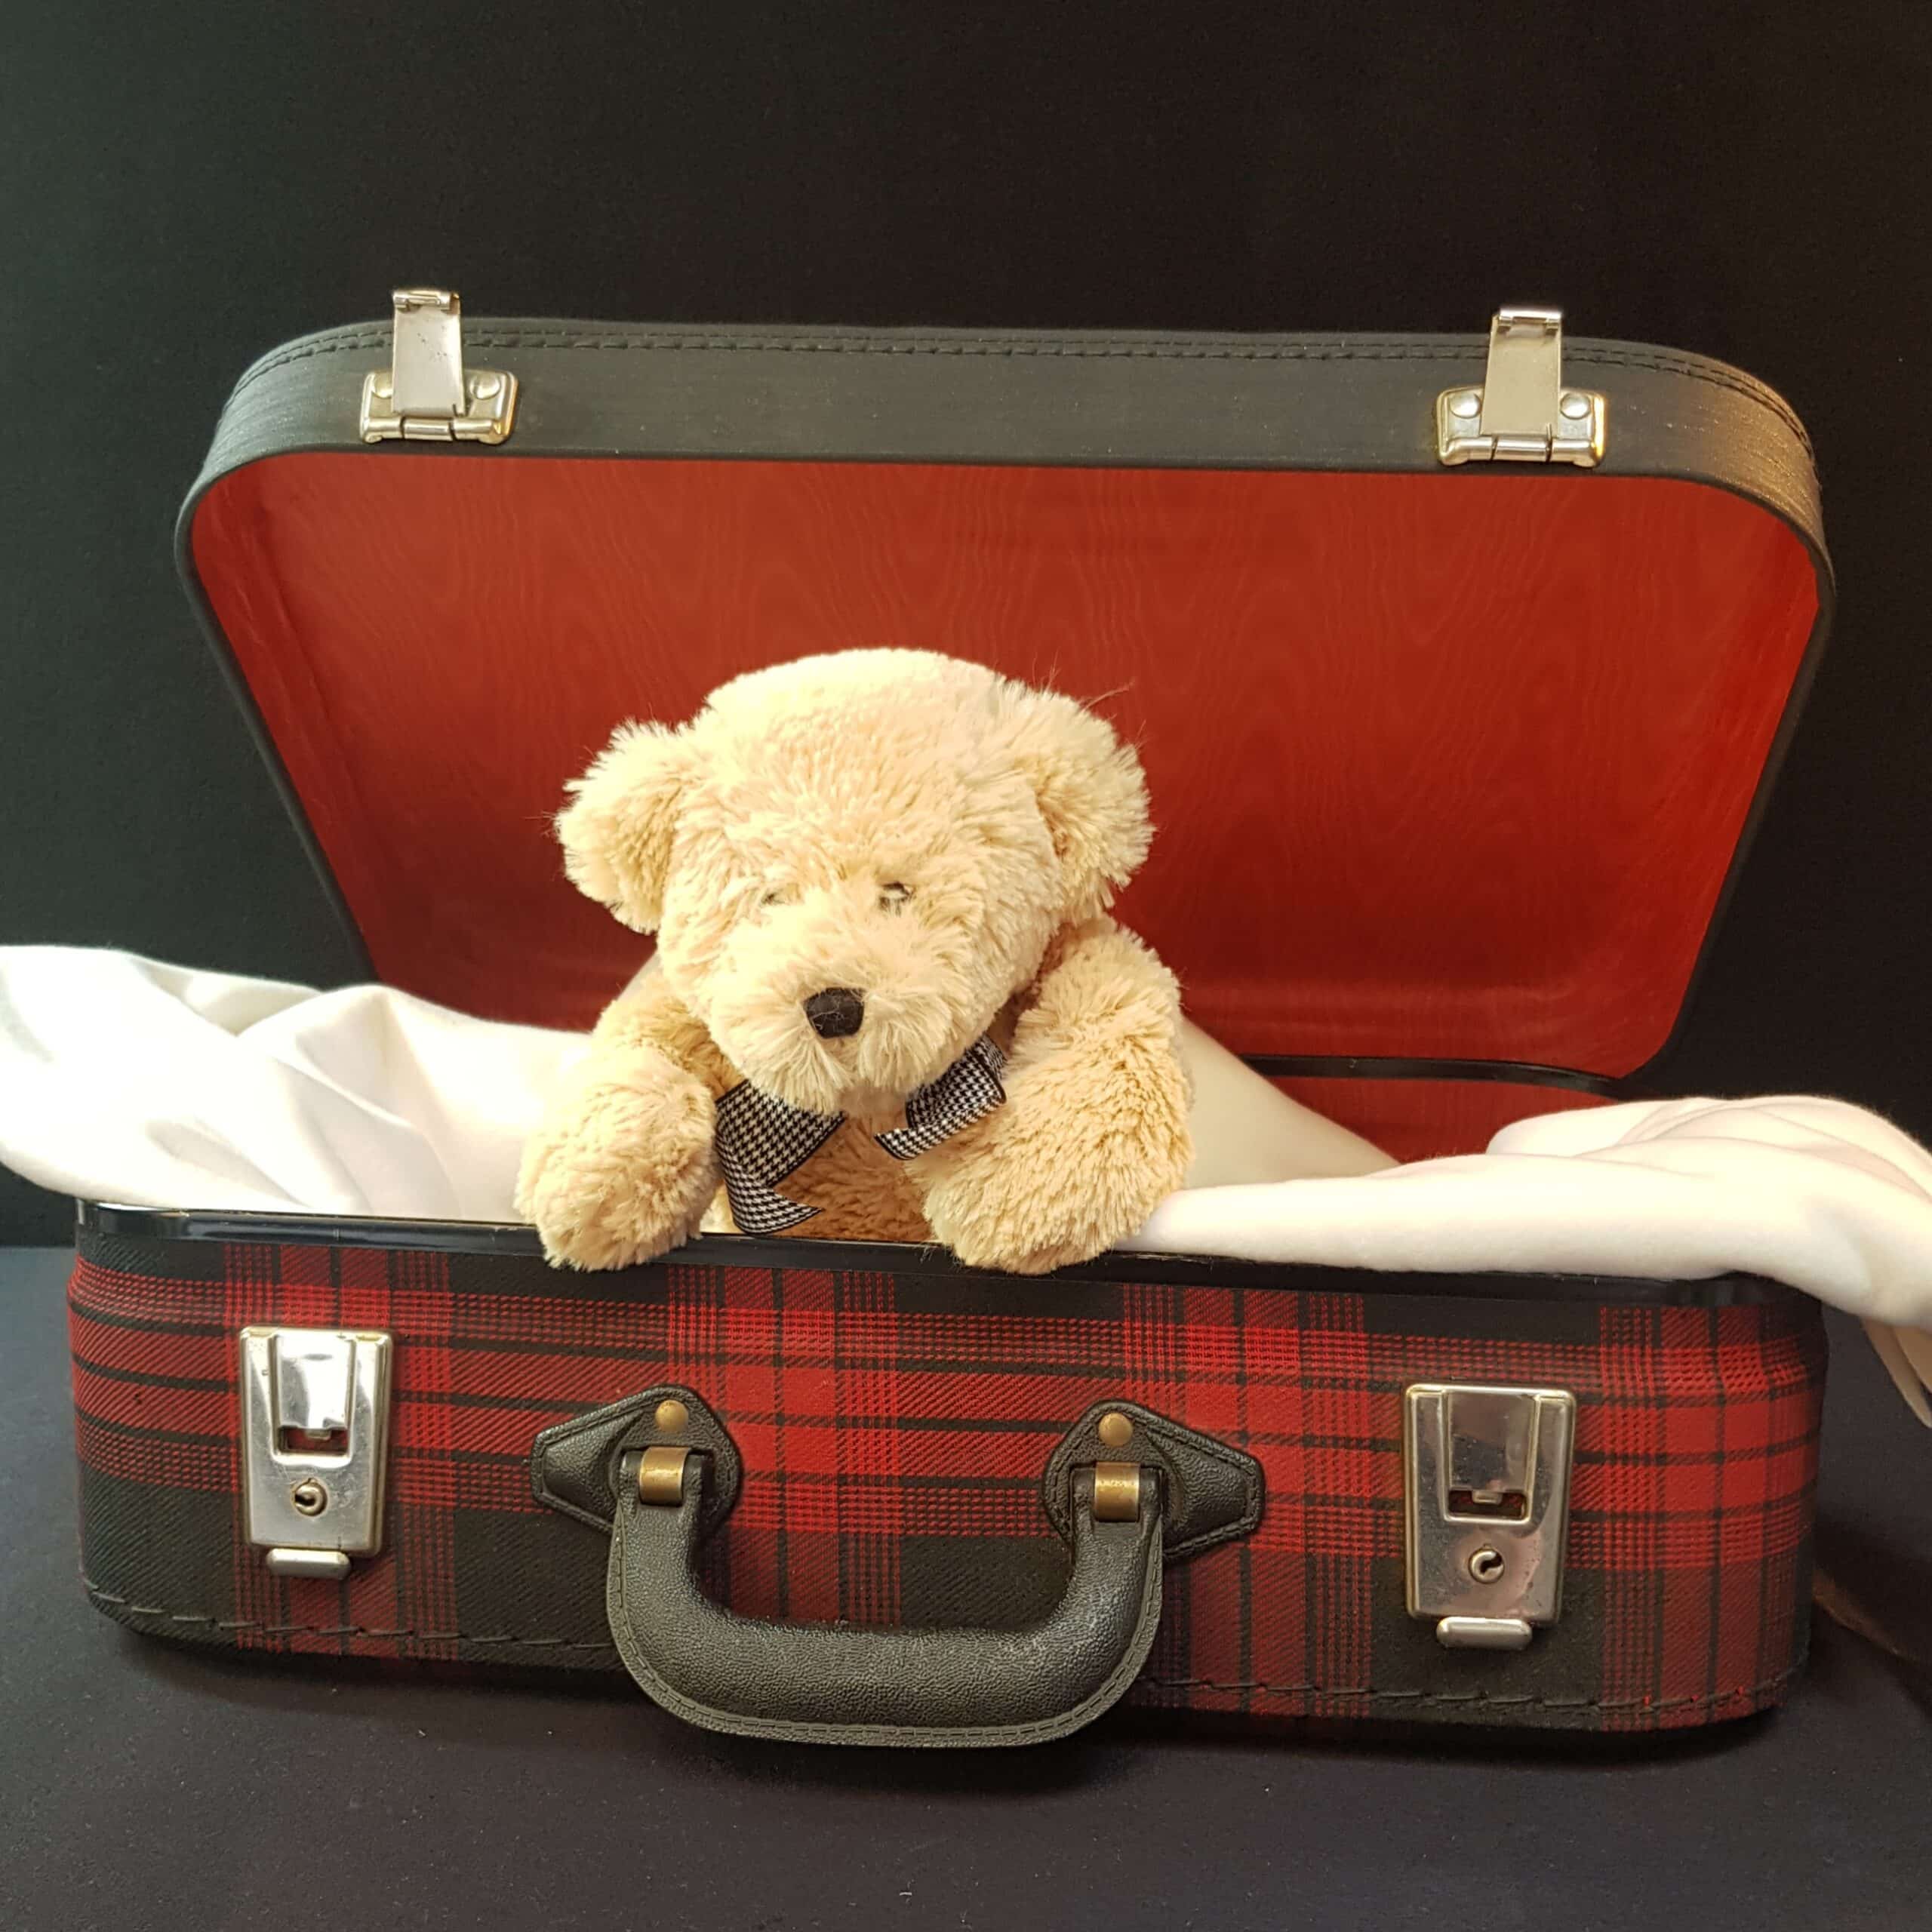 valise carton tissus ecossais merveille et bout de chandelle scaled